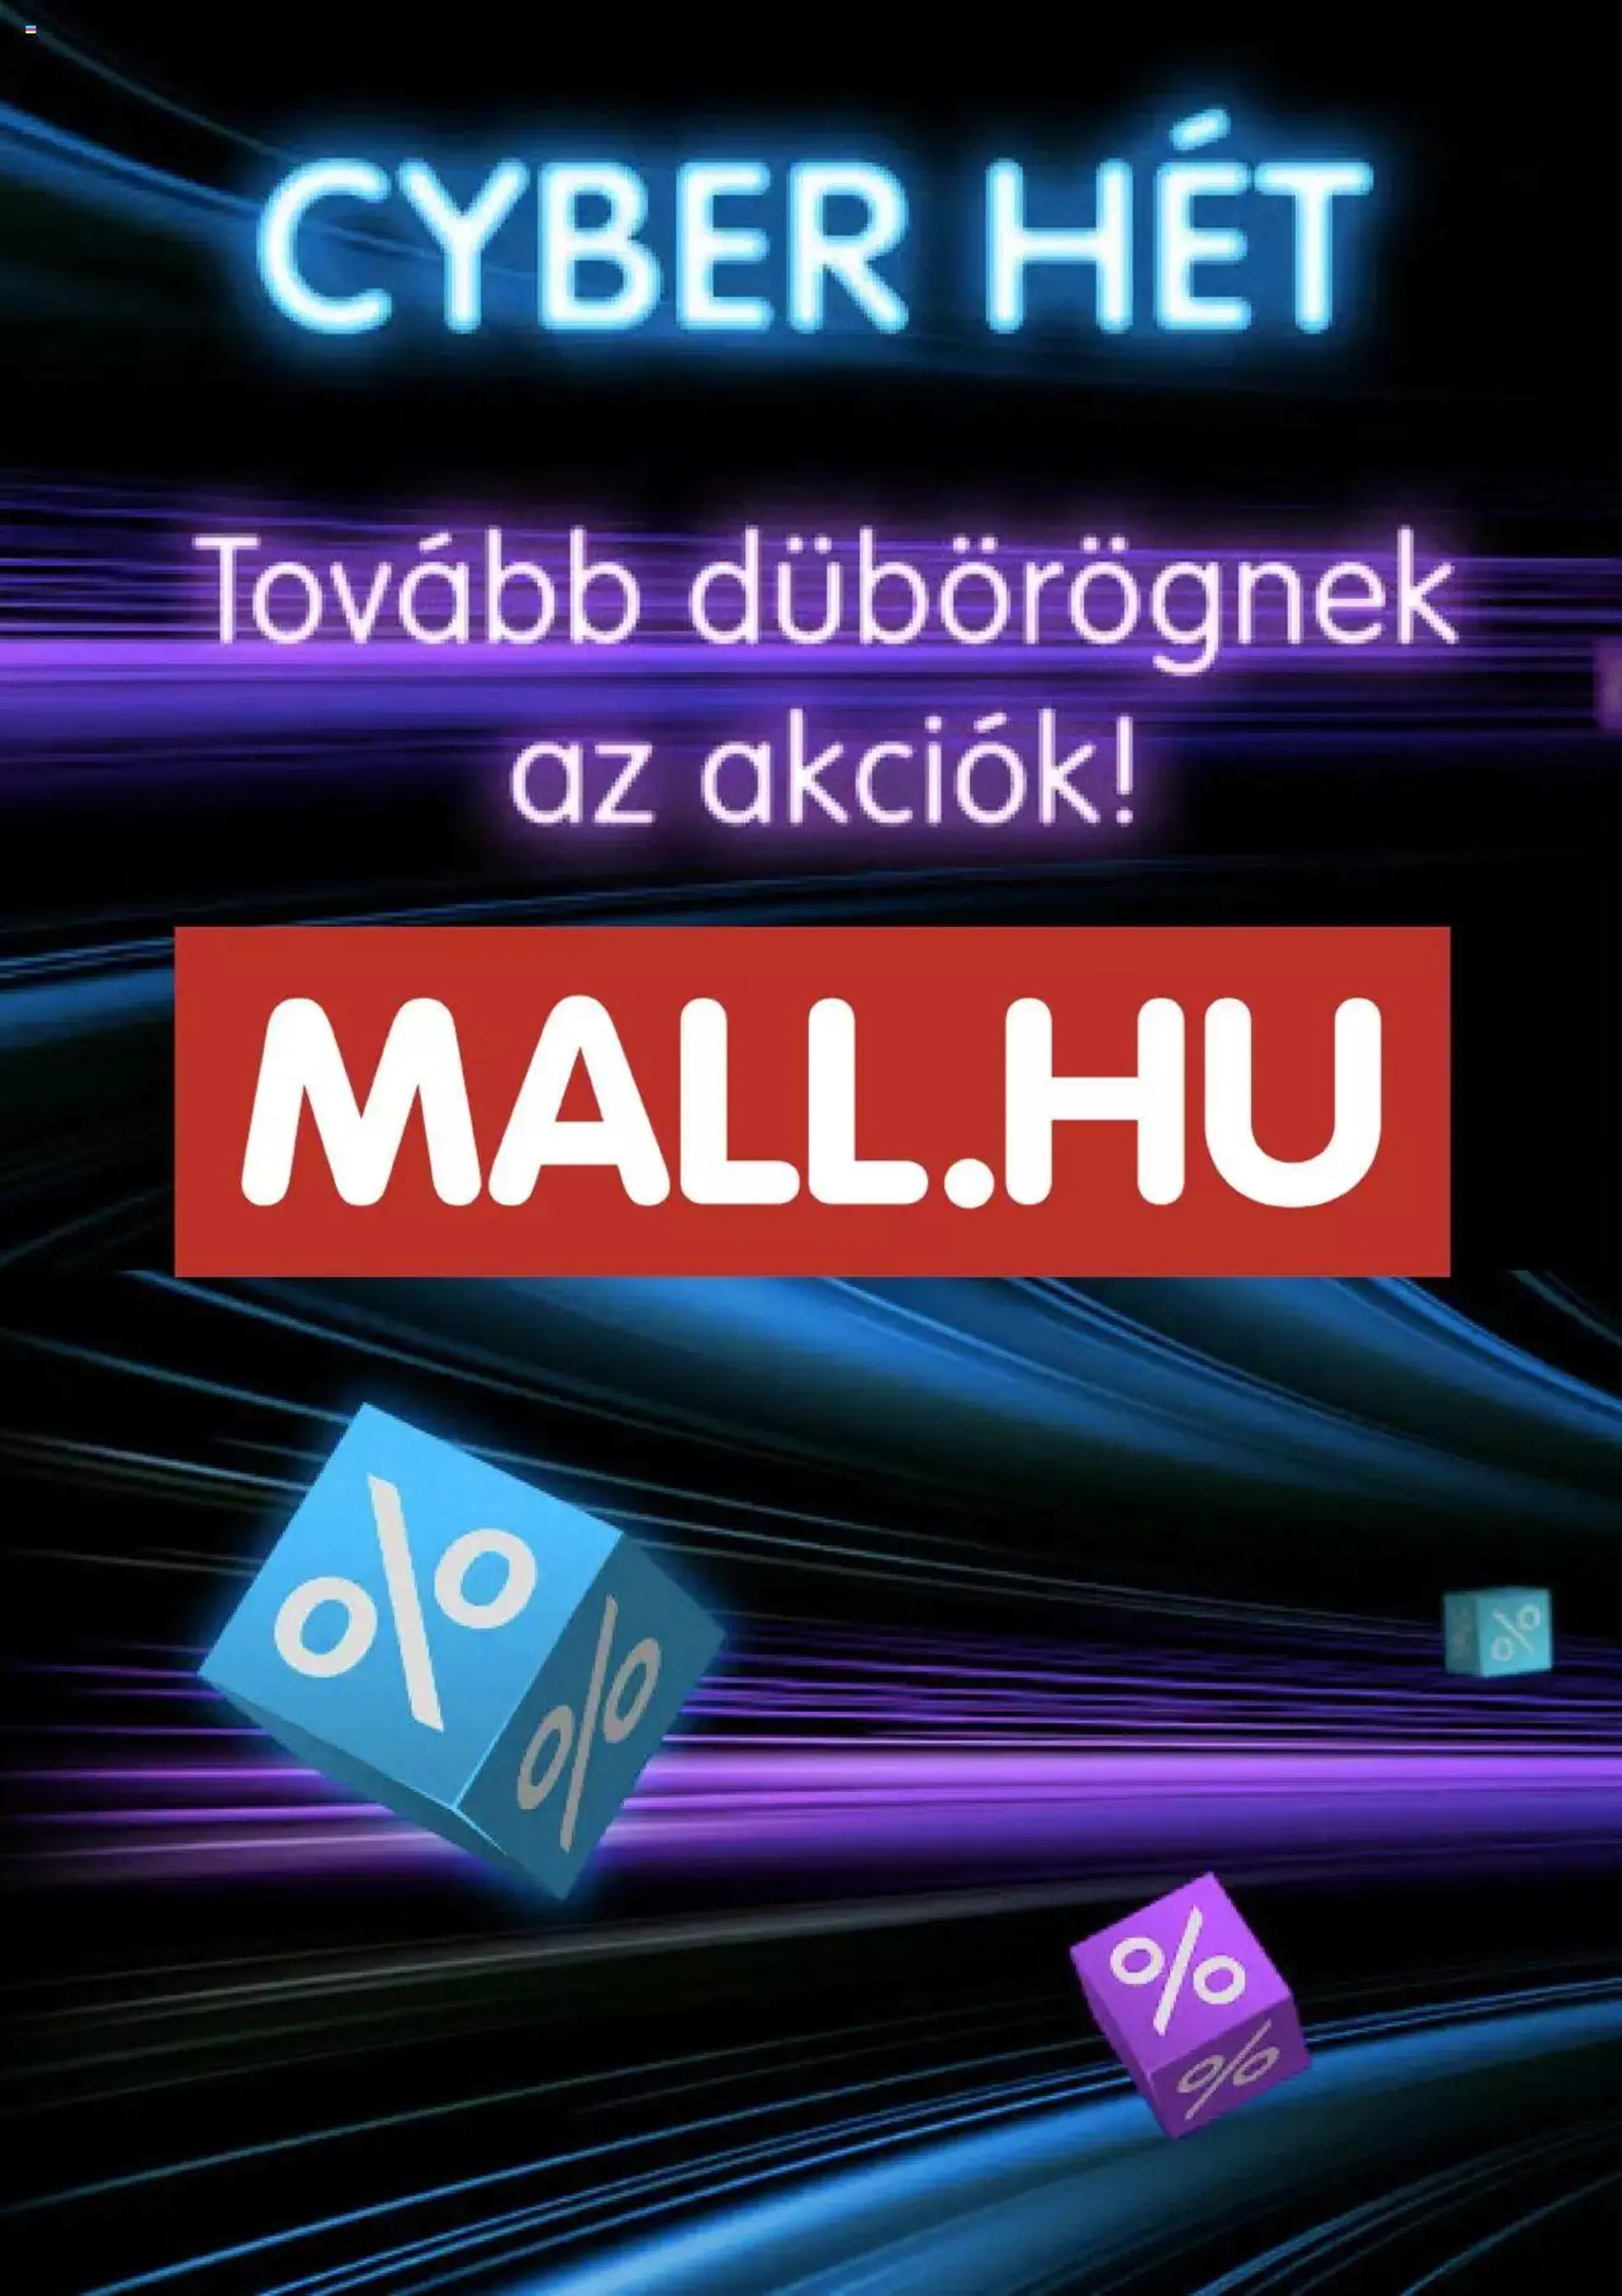 MALL.HU - Cyber hét - 0